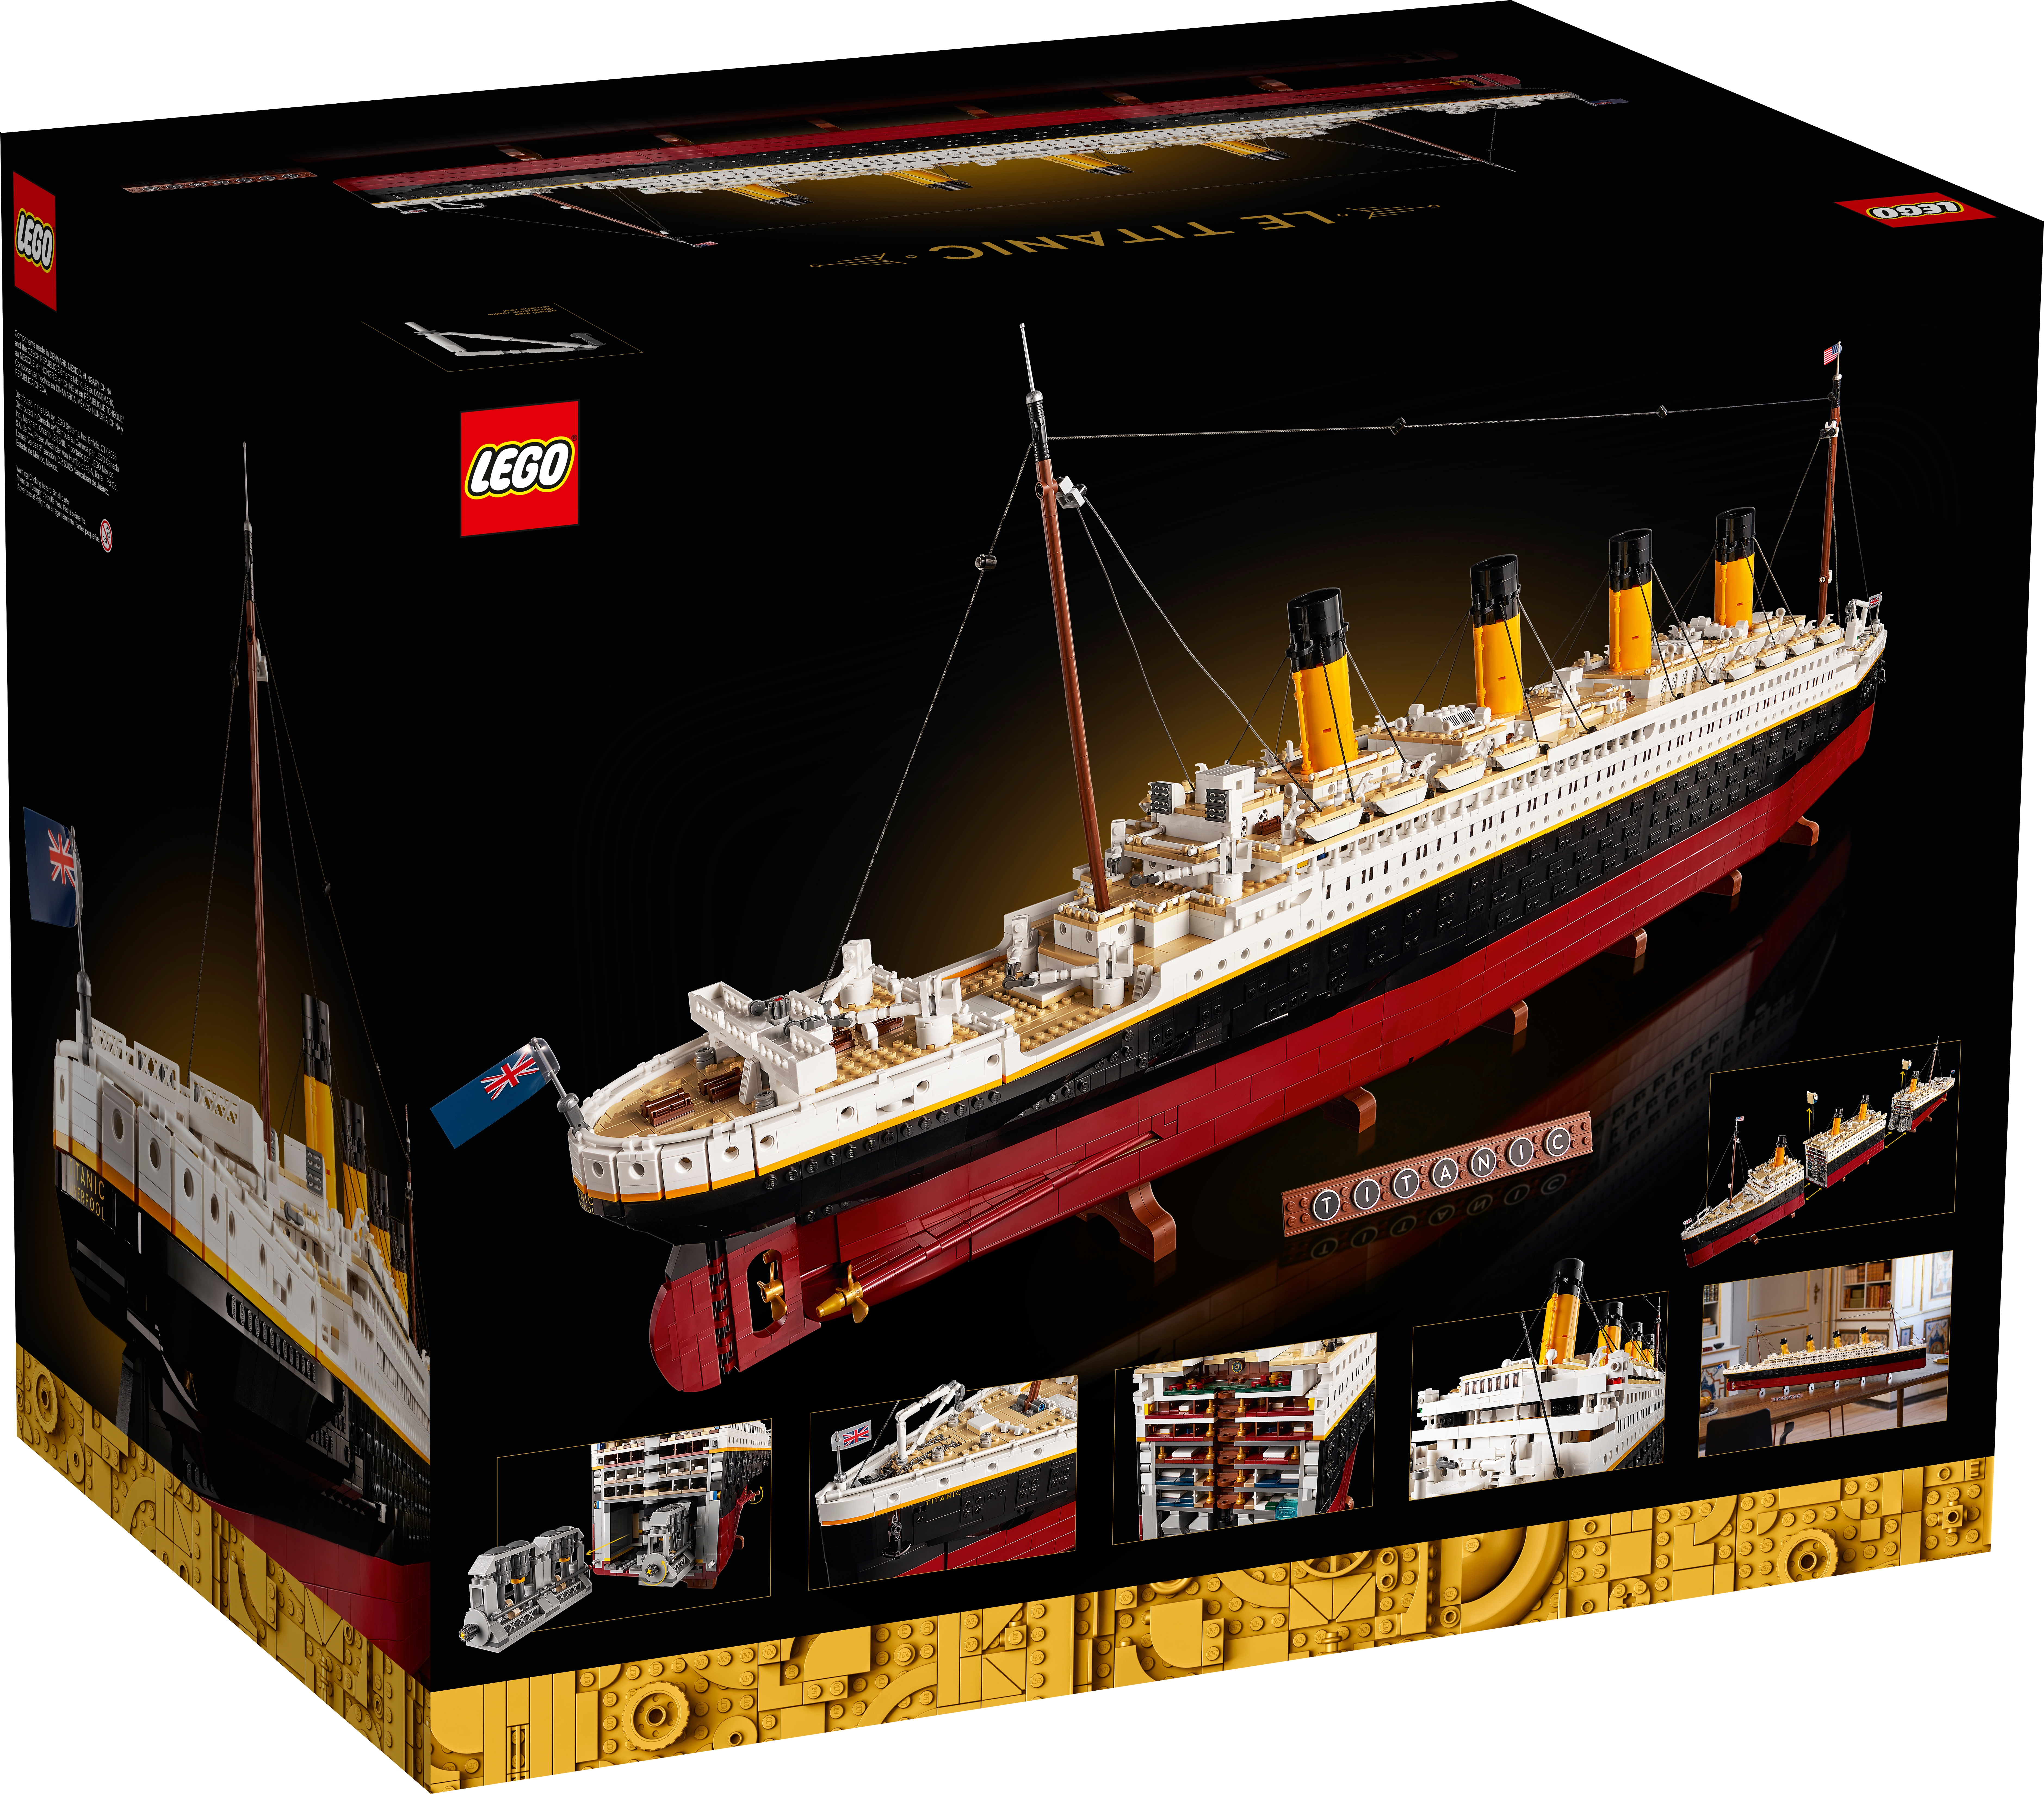 Lego Bateau, Le Titanic, Sluban - Seb high-tech